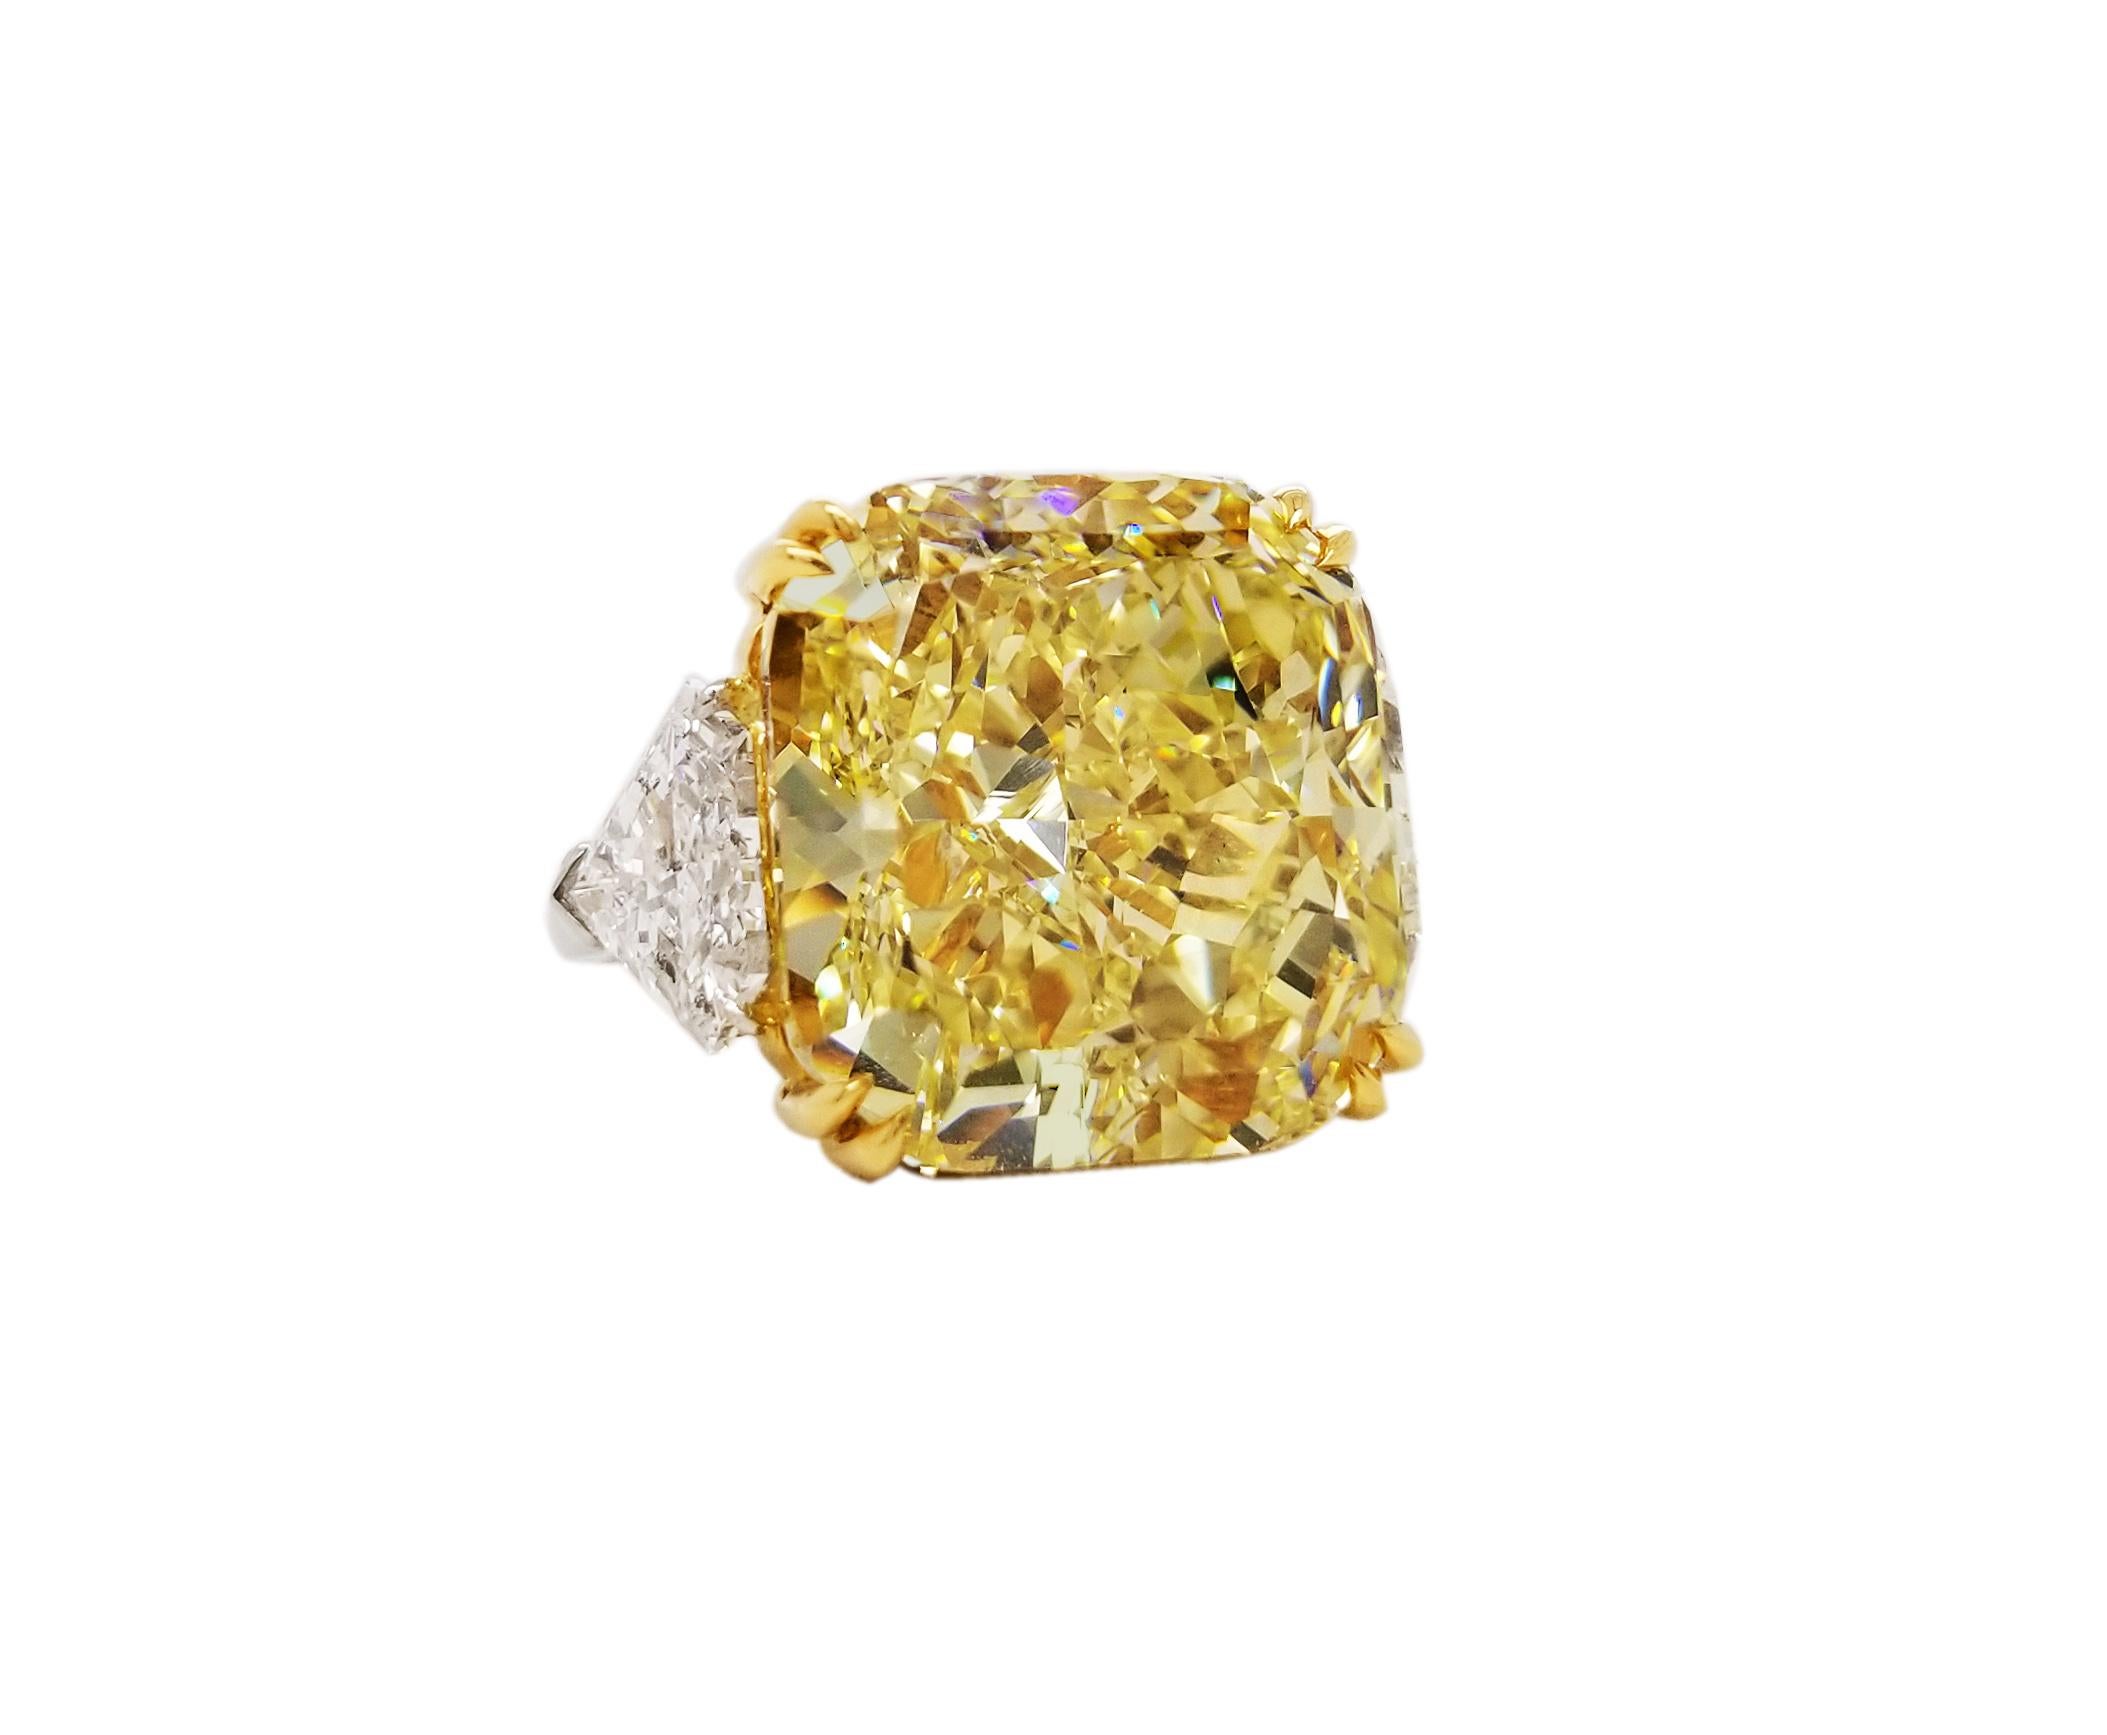 SCARSELLI ist mit einem 21 + Karat Fancy Intense Yellow Radiant Cut Diamond VVS1 Klarheit, zertifiziert durch GIA (siehe Zertifikat Bild für detaillierte Informationen Stein) flankiert von einem Paar von Trilliant VS Diamanten insgesamt 0,85 Karat